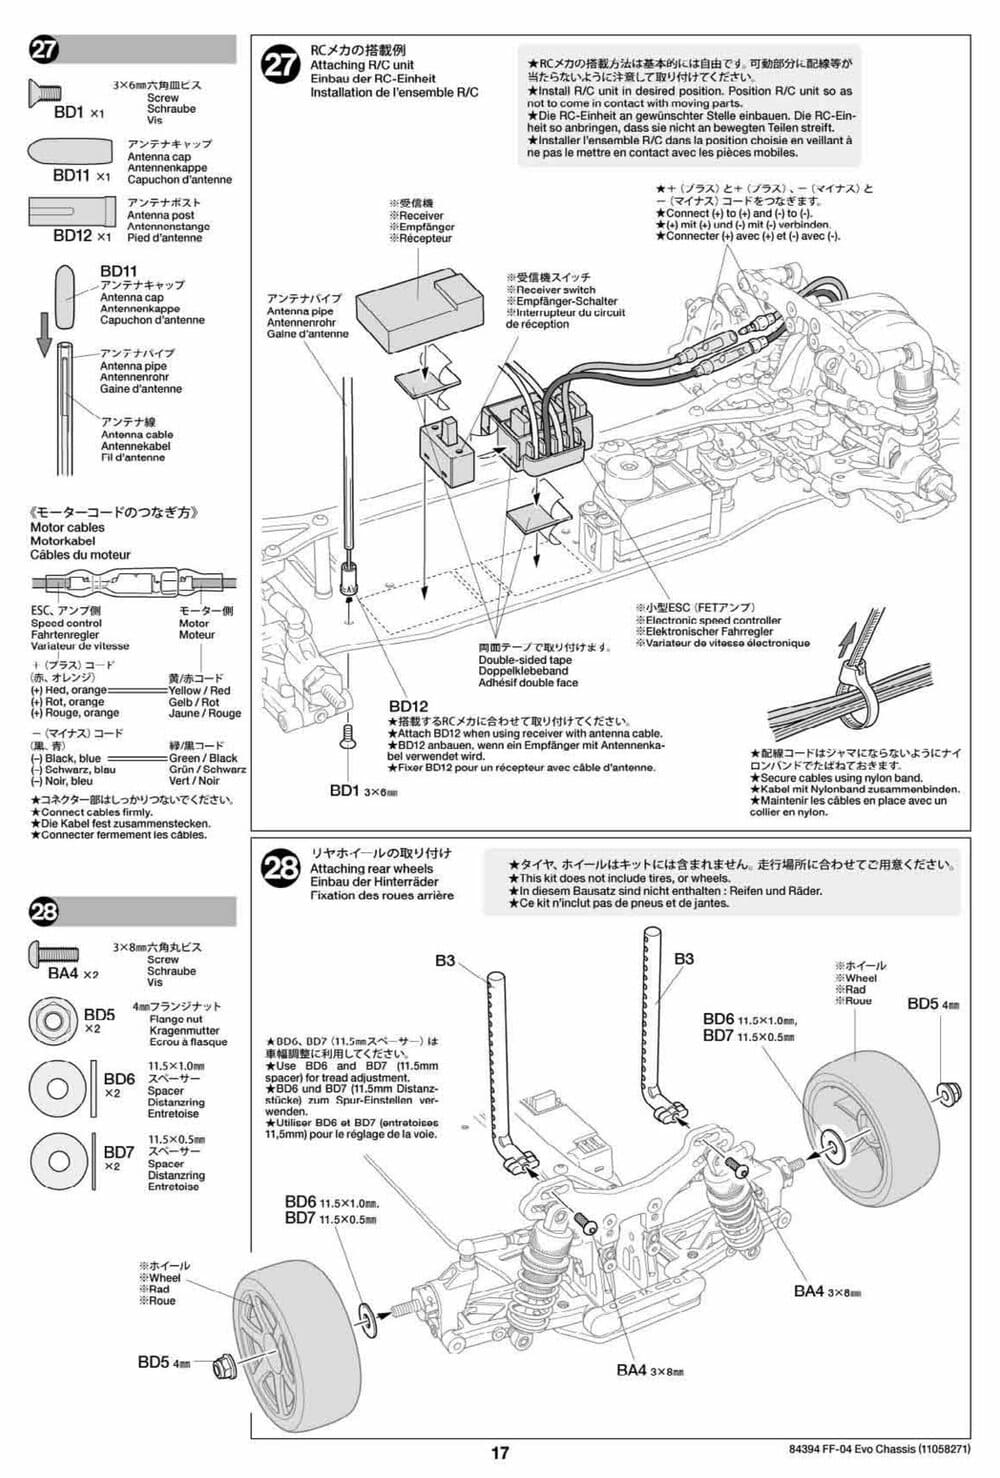 Tamiya - FF-04 Evo Chassis - Manual - Page 17